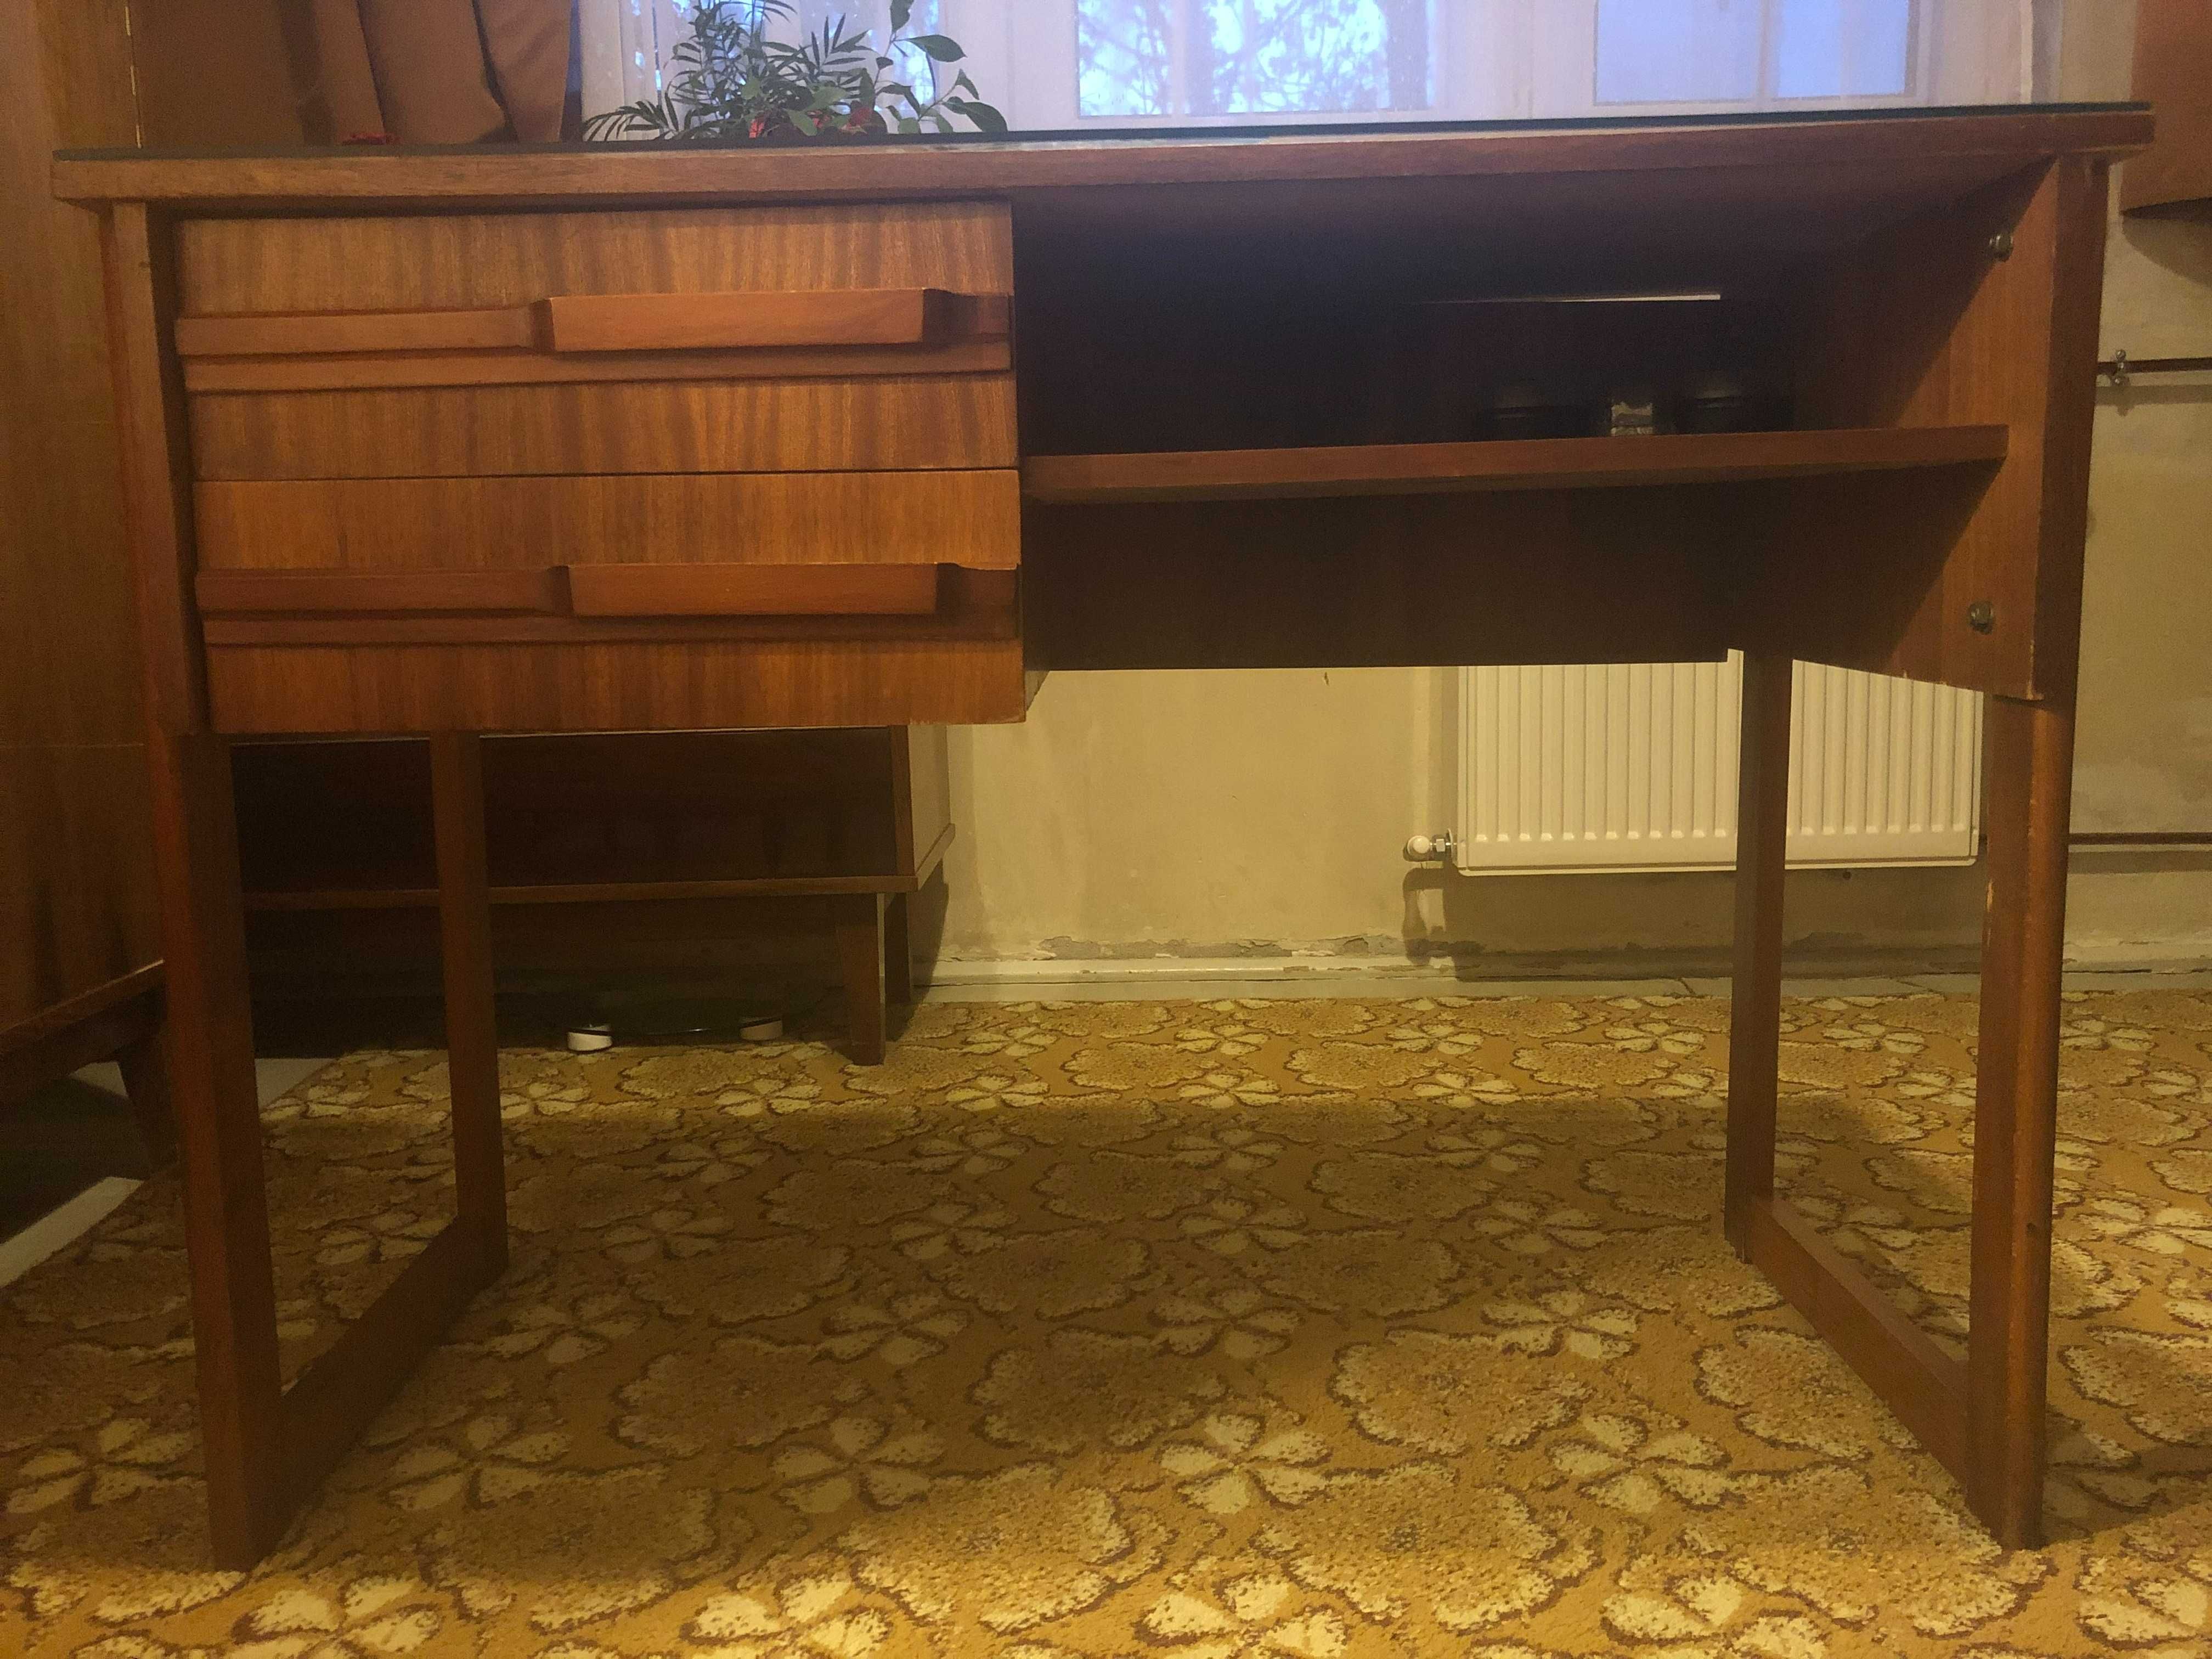 De vanzare birou lemn stare impecabila, romanesc, vintage